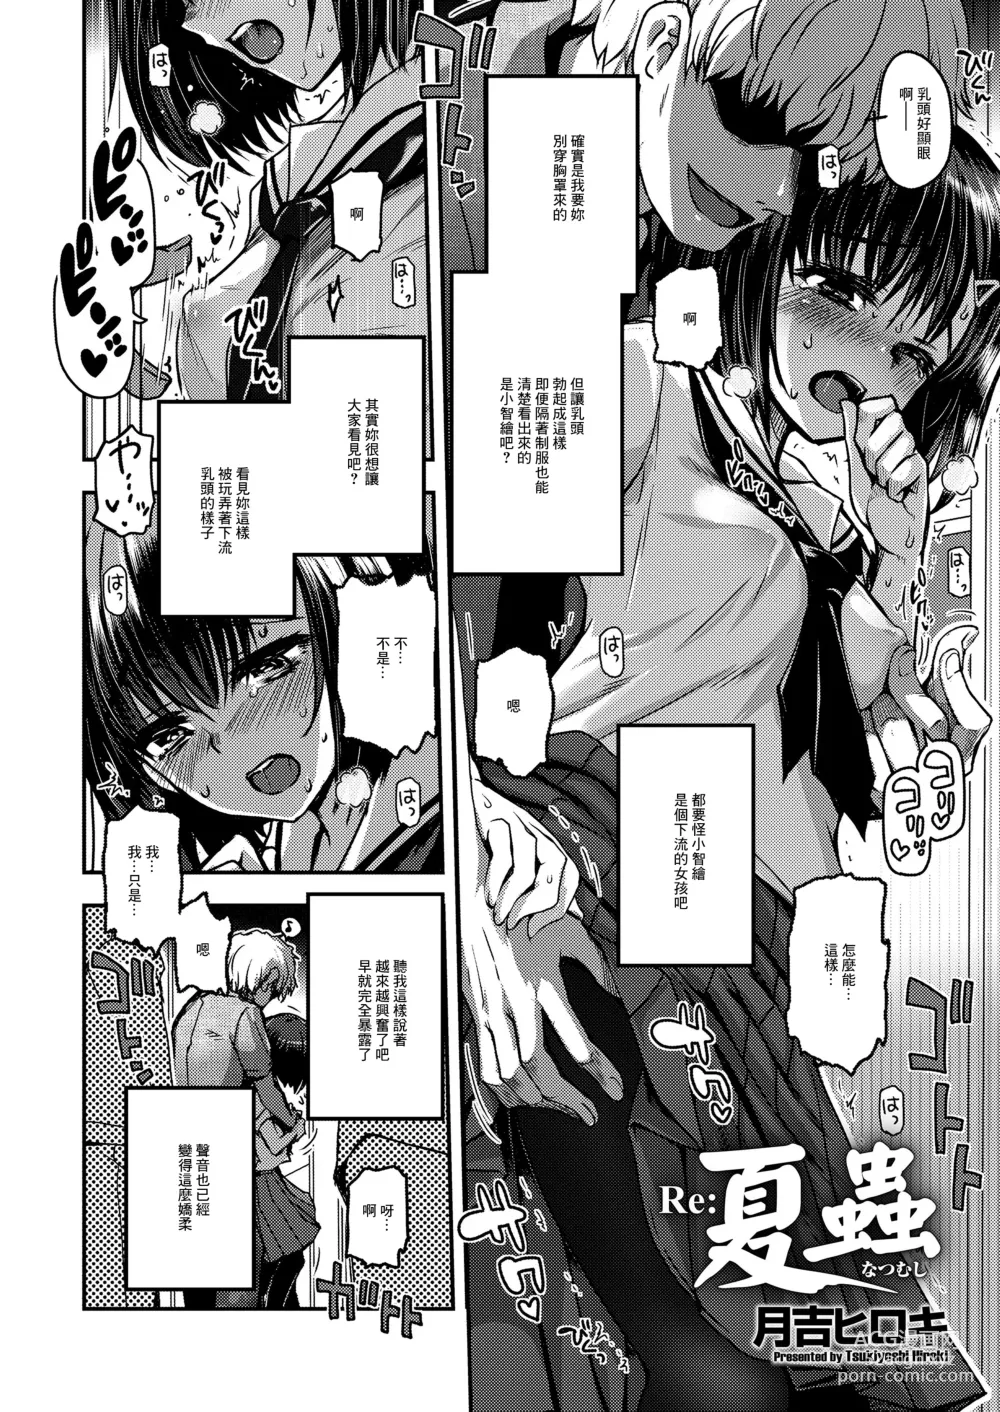 Page 2 of manga Re: Natsumushi